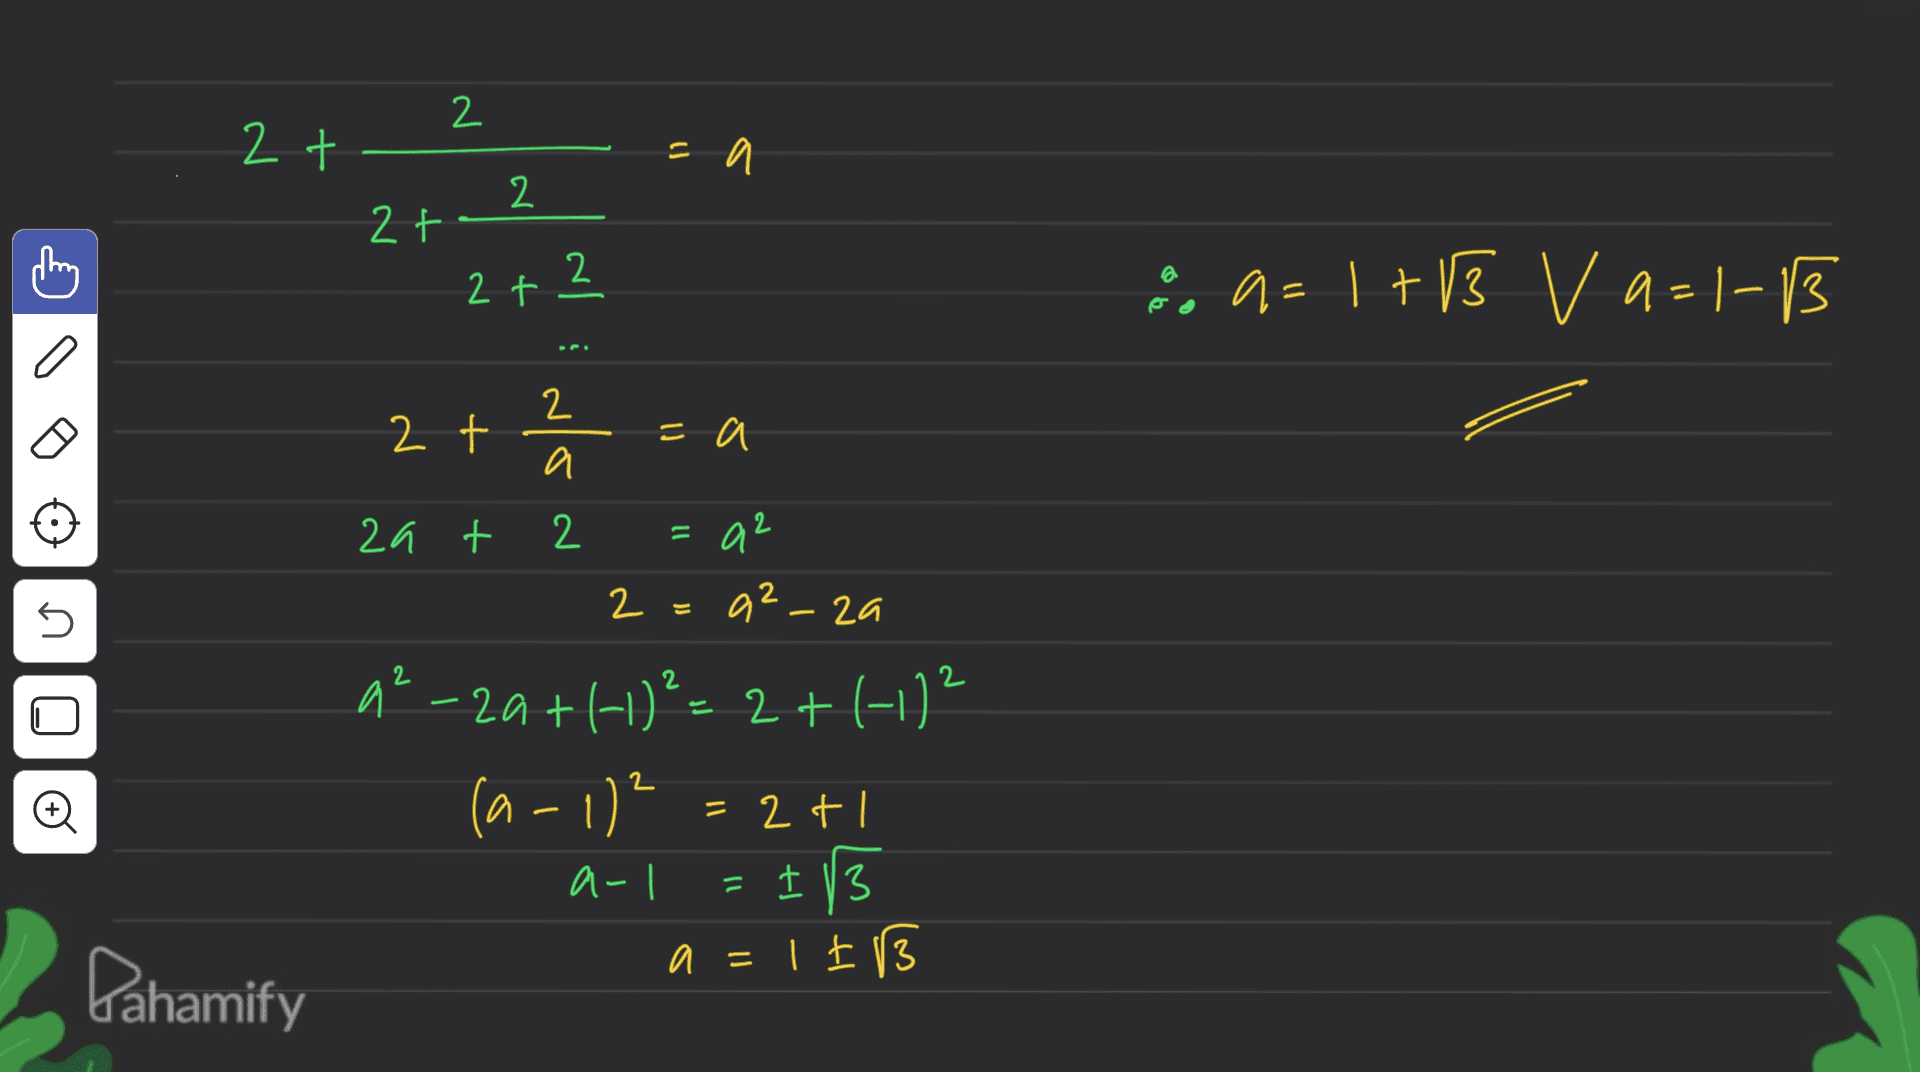 2 2 t =a 2 2+- 2 2 t :, 9 - 1 + 13 V a-1-13 v = a= 2 2 t =a a 11 a2 n 2 2 + U 2a + 2 2=a2_za 2 a²-20+1+1)%= 2 + (-1/² (a - 1) = 2+1 2 a-l = 1/3 a=1I3 Pahamify 